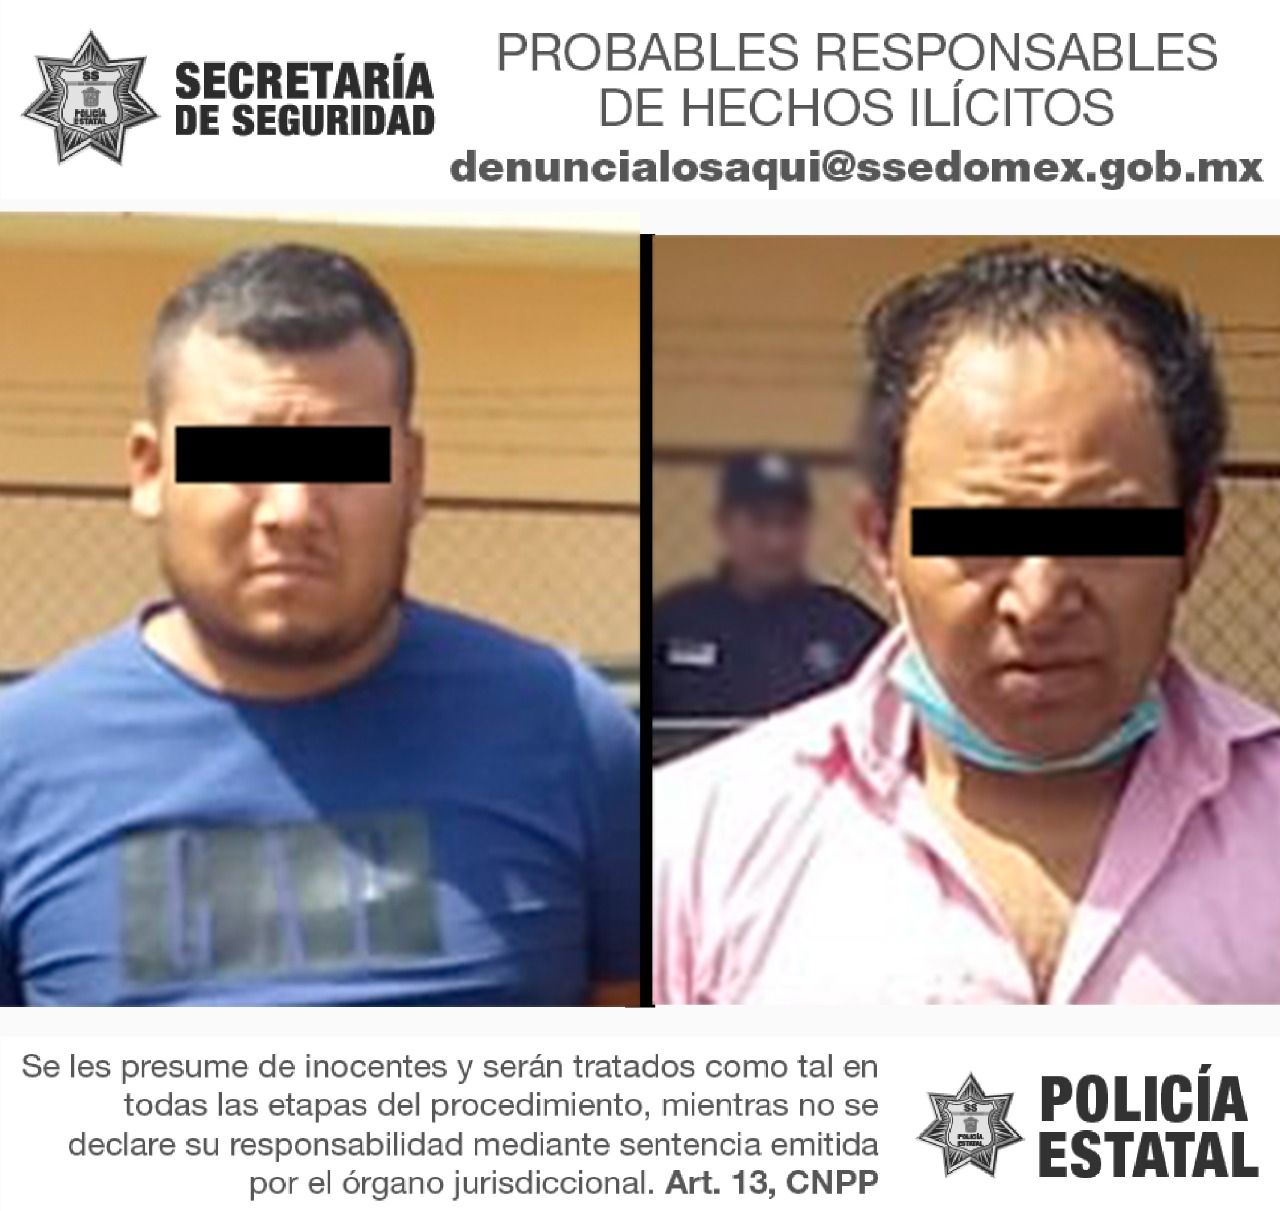 #Detienen a dos que portaban pistolas en Toluca